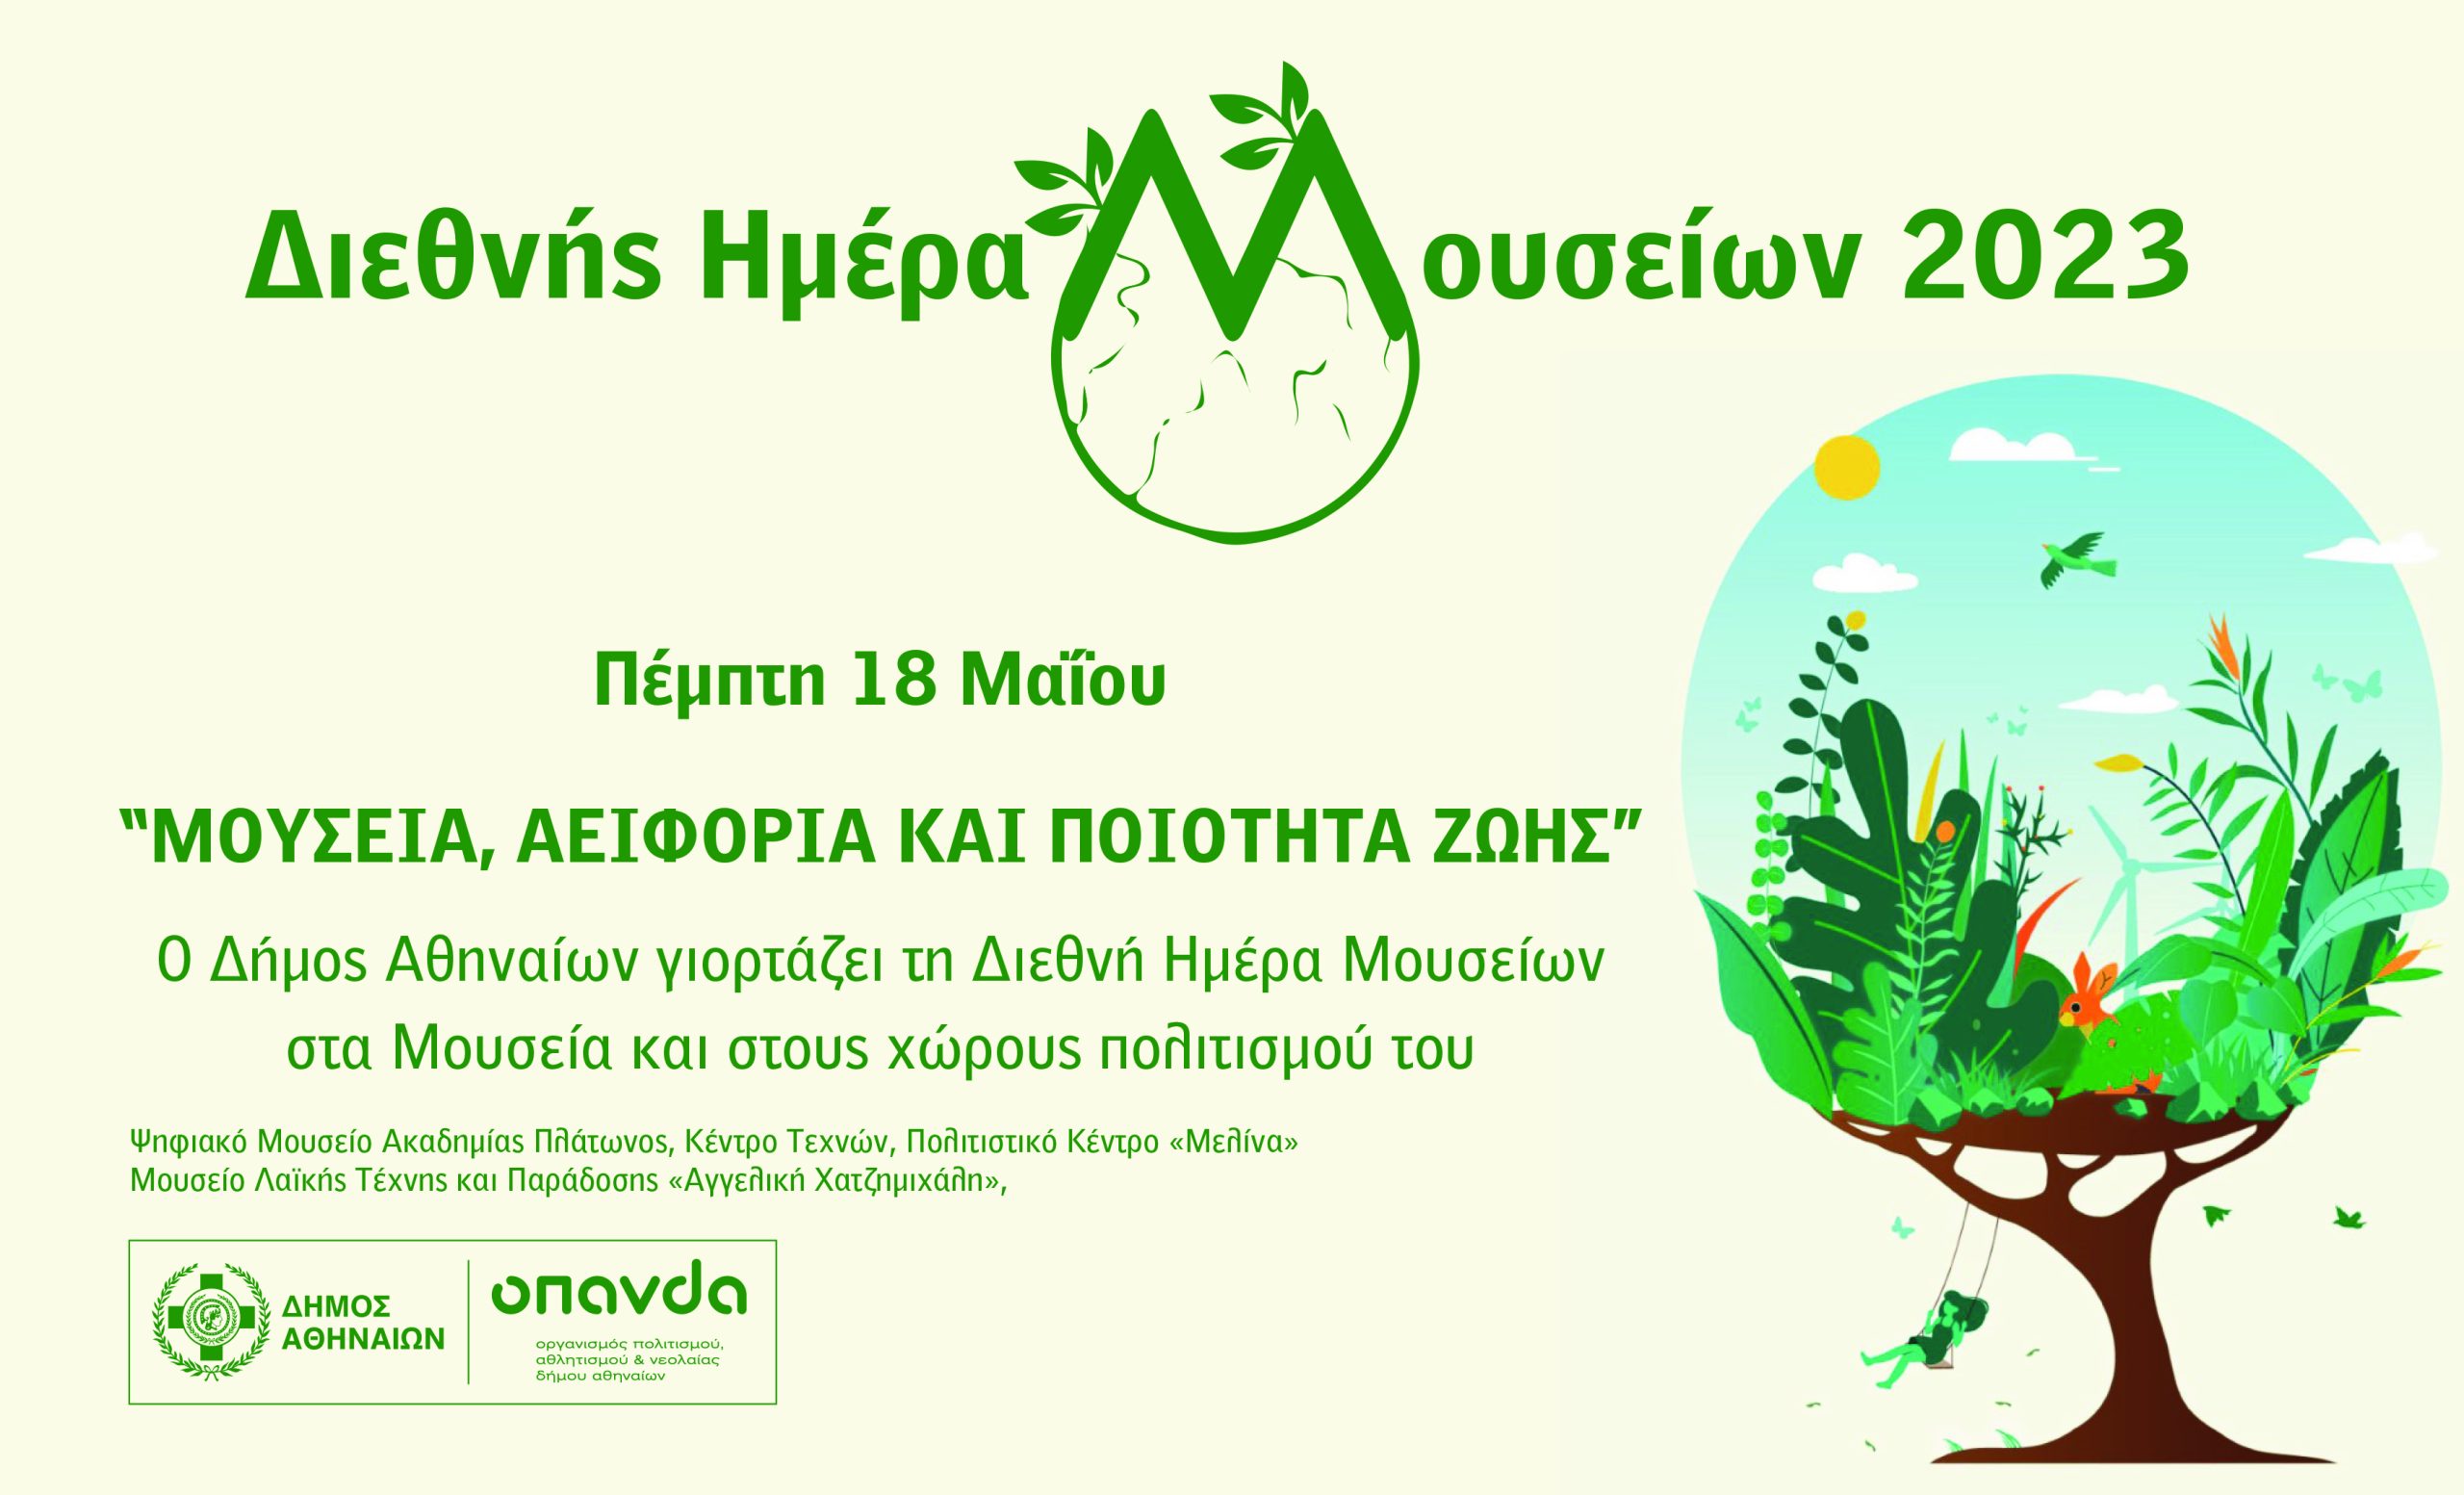 Διεθνής Ημέρα Μουσείων 2023: Ο Δήμος Αθηναίων γιορτάζει με δωρεάν δράσεις και προγράμματα για μικρούς και μεγάλους